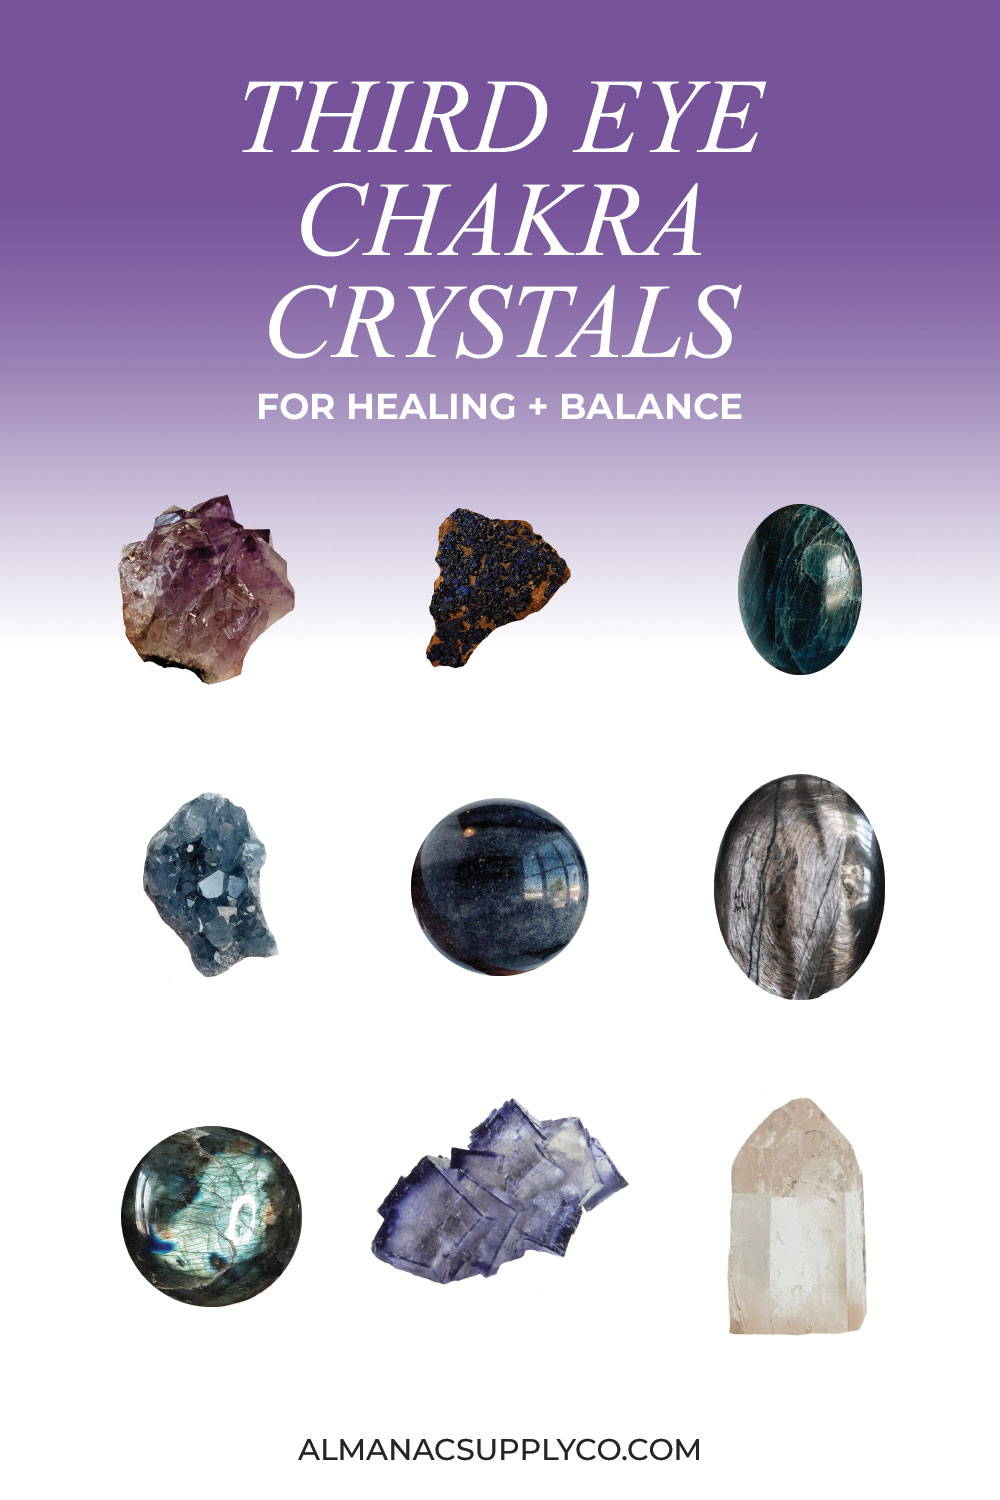 Third Eye Chakra Crystals for Healing & Balance